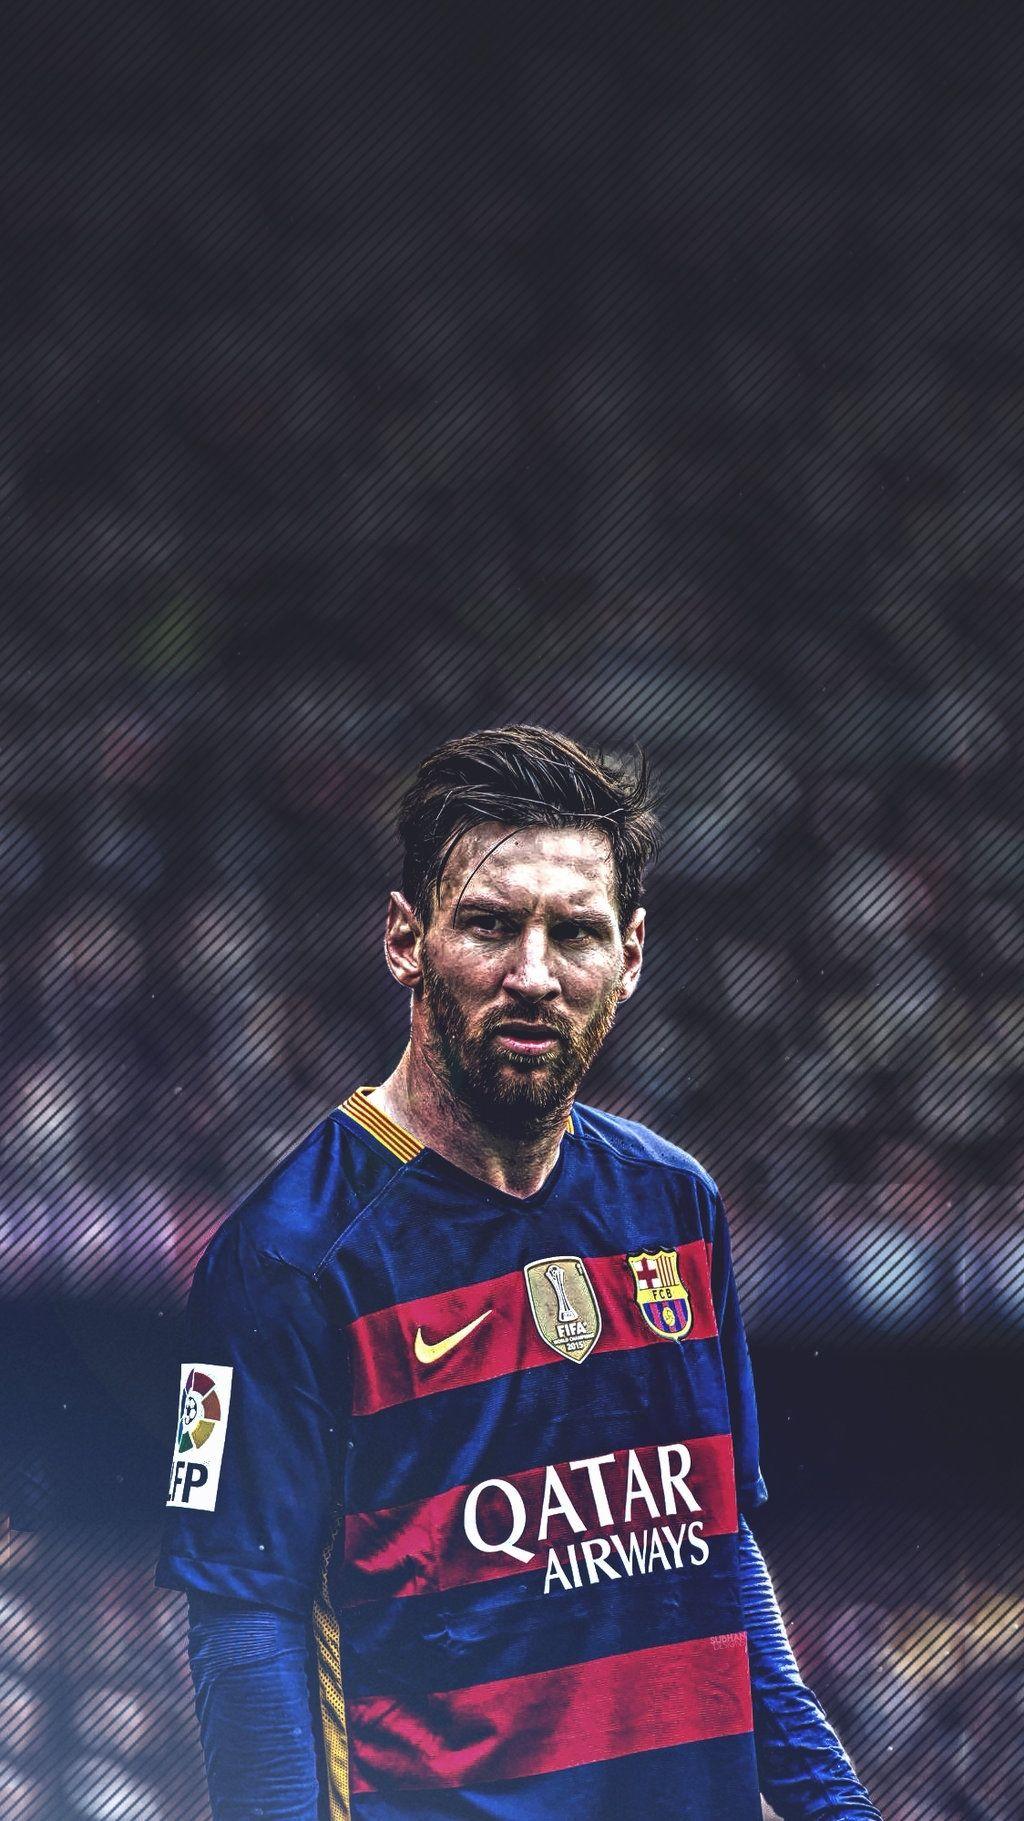 Siêu sao bóng đá Lionel Messi luôn là tâm điểm thu hút của các tín đồ bóng đá. Khám phá những bức ảnh sống động và êm ái về siêu sao này và chiêm ngưỡng tài năng của anh chàng với hình ảnh đầy sáng tạo.